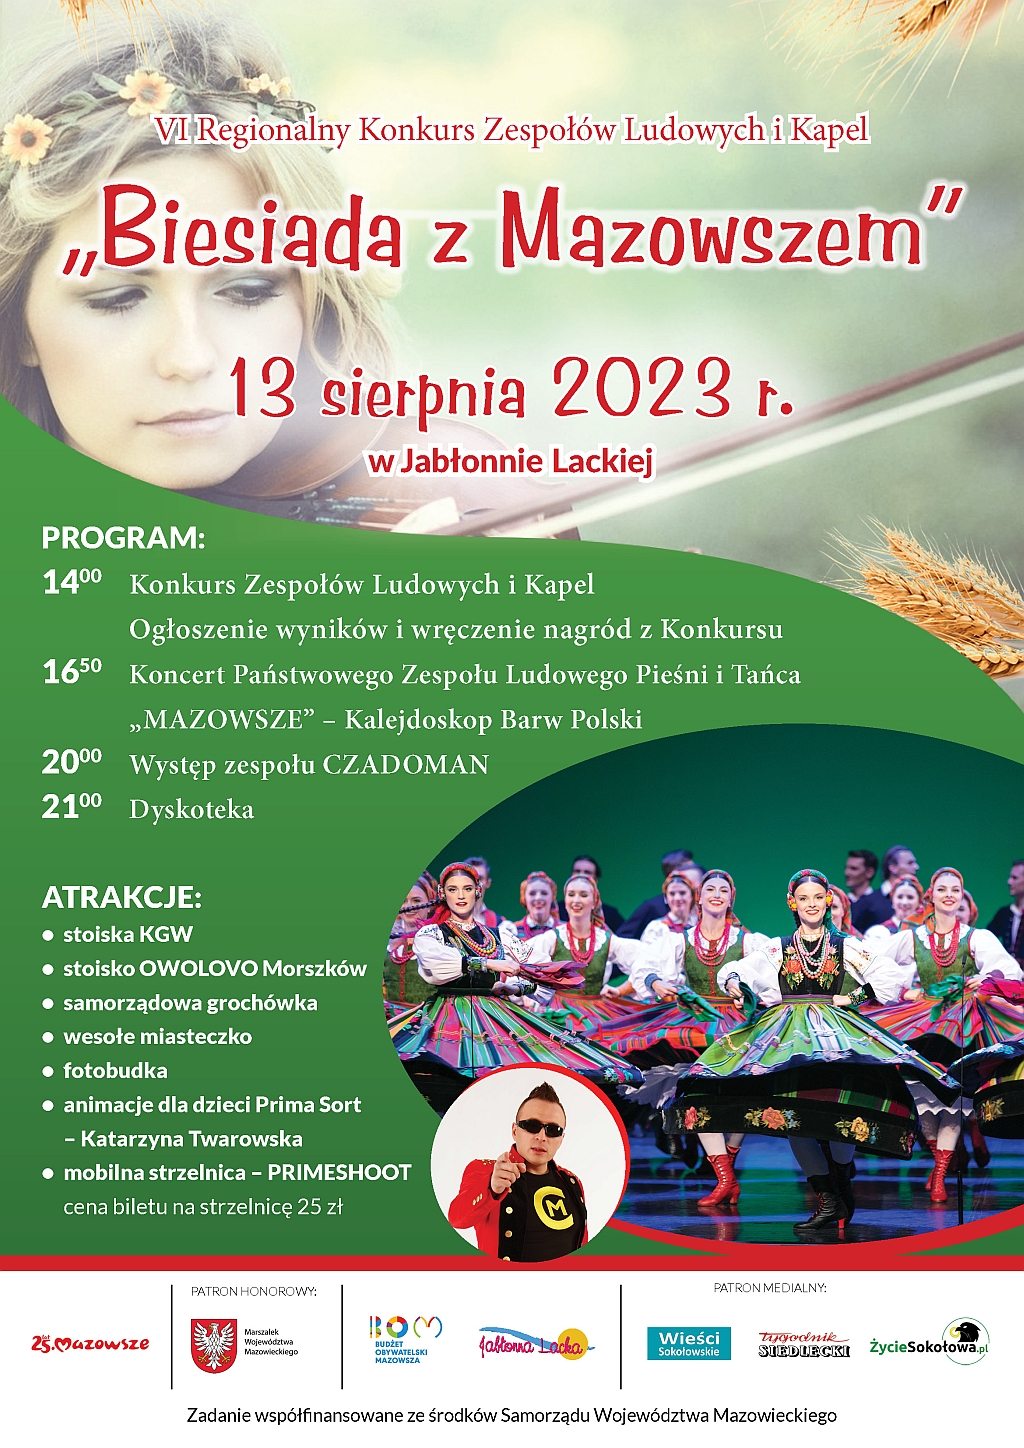 Biesiada z Mazowszem 2023